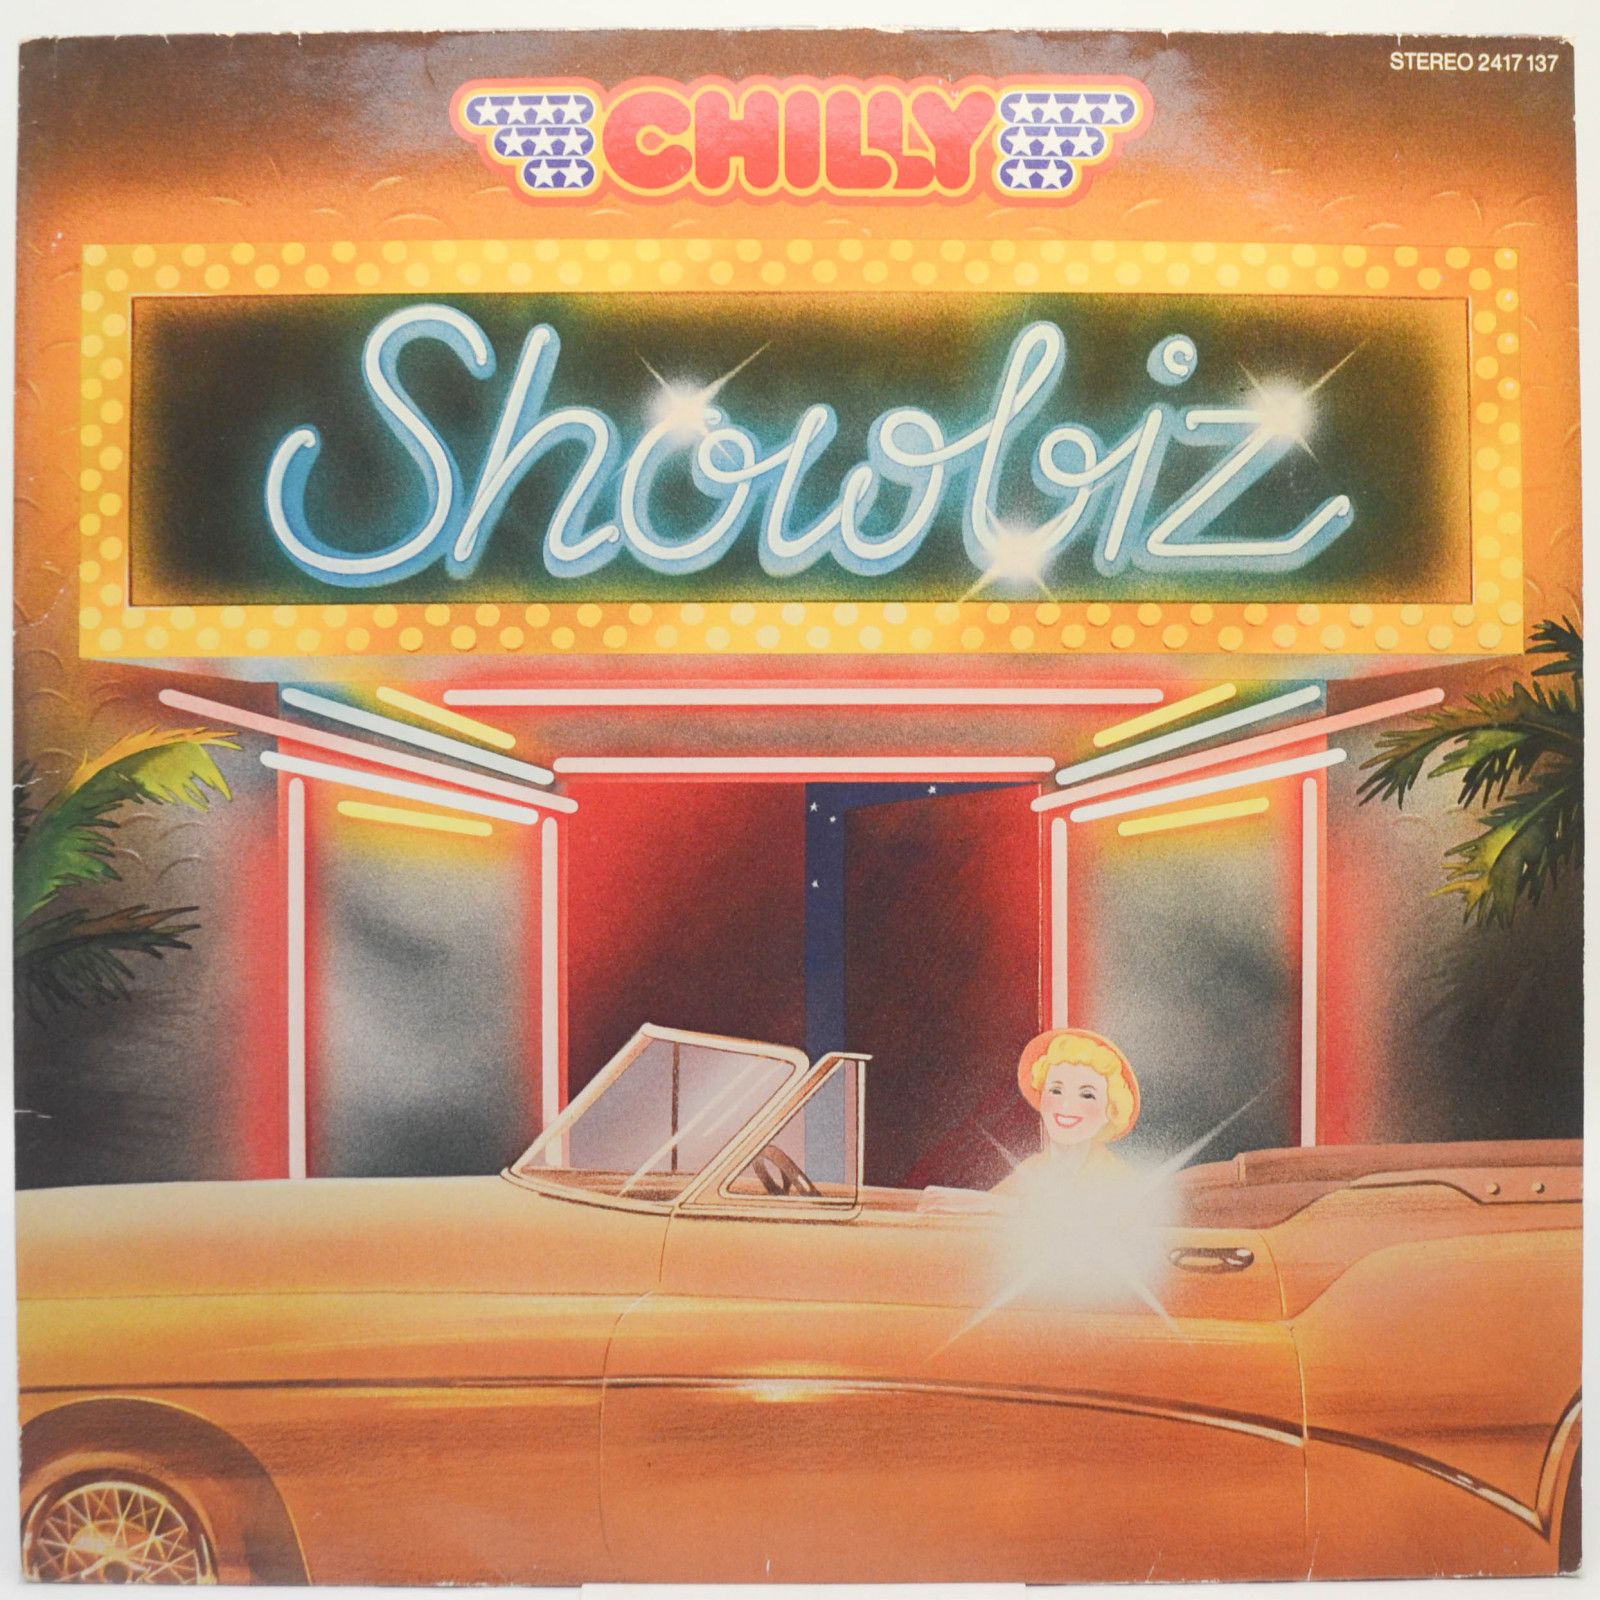 Chilly — Showbiz, 1980